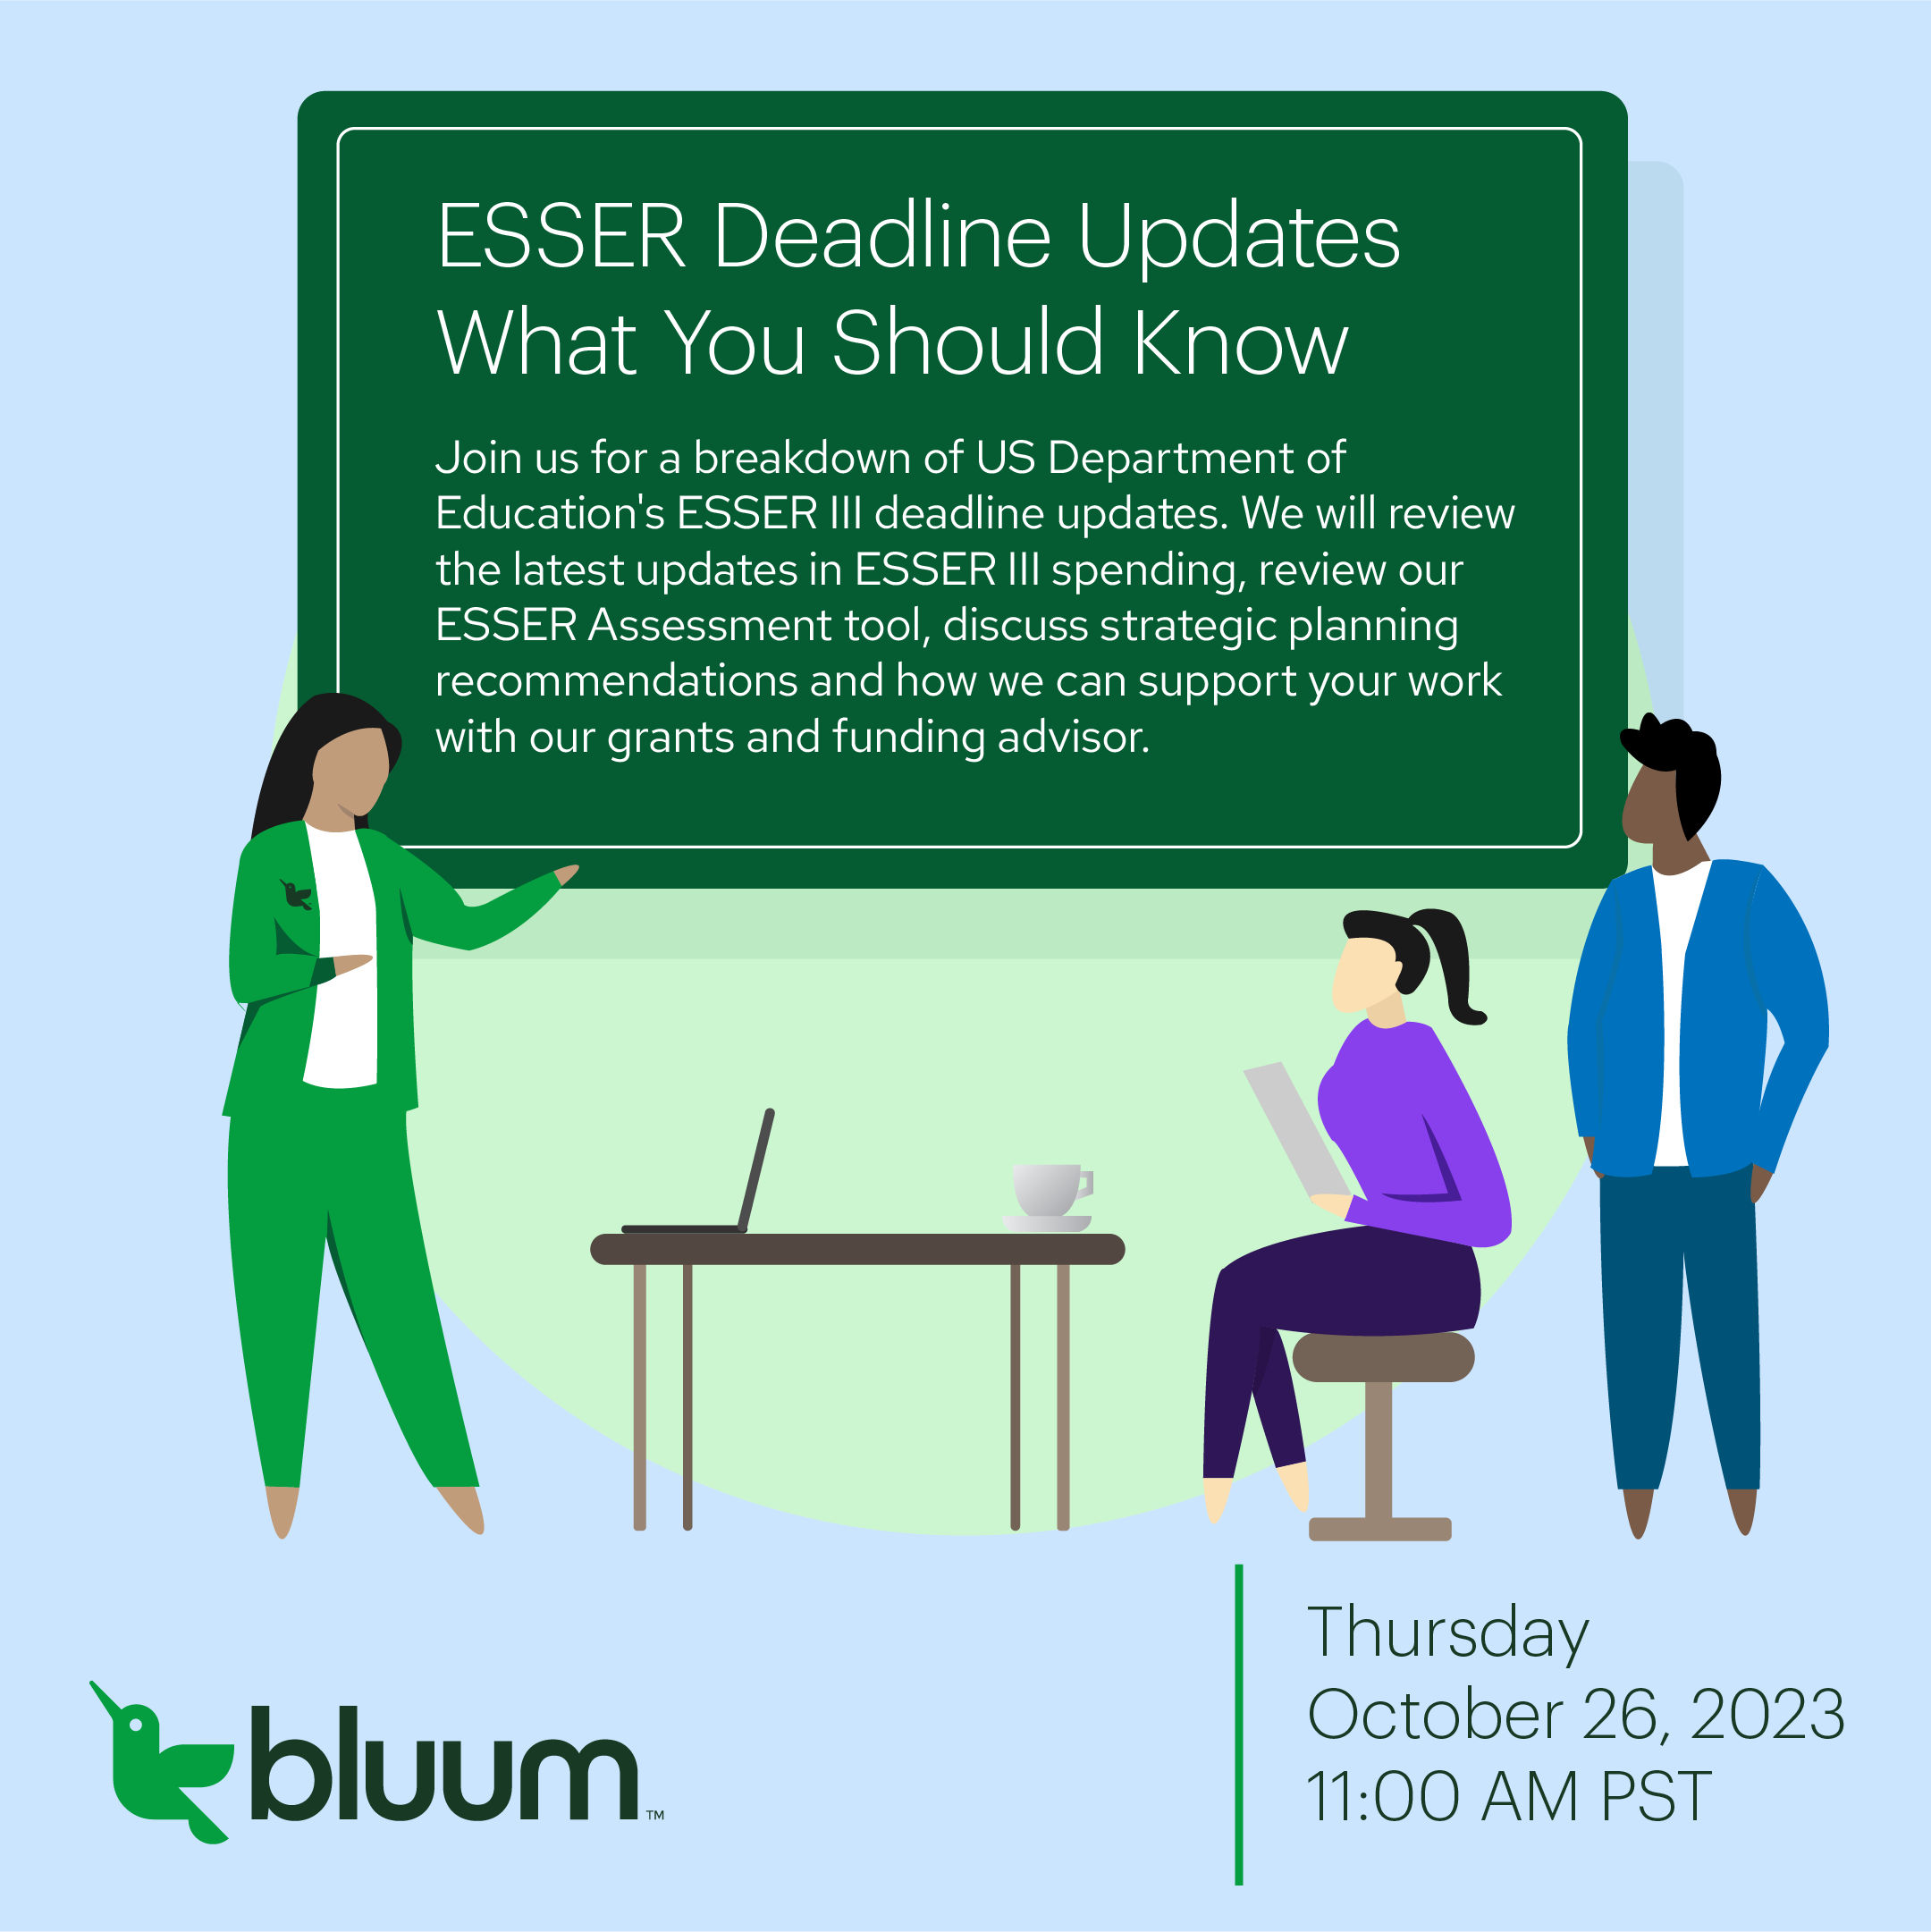 Join us for the ESSER DEadline Update  webinar on Oct. 26